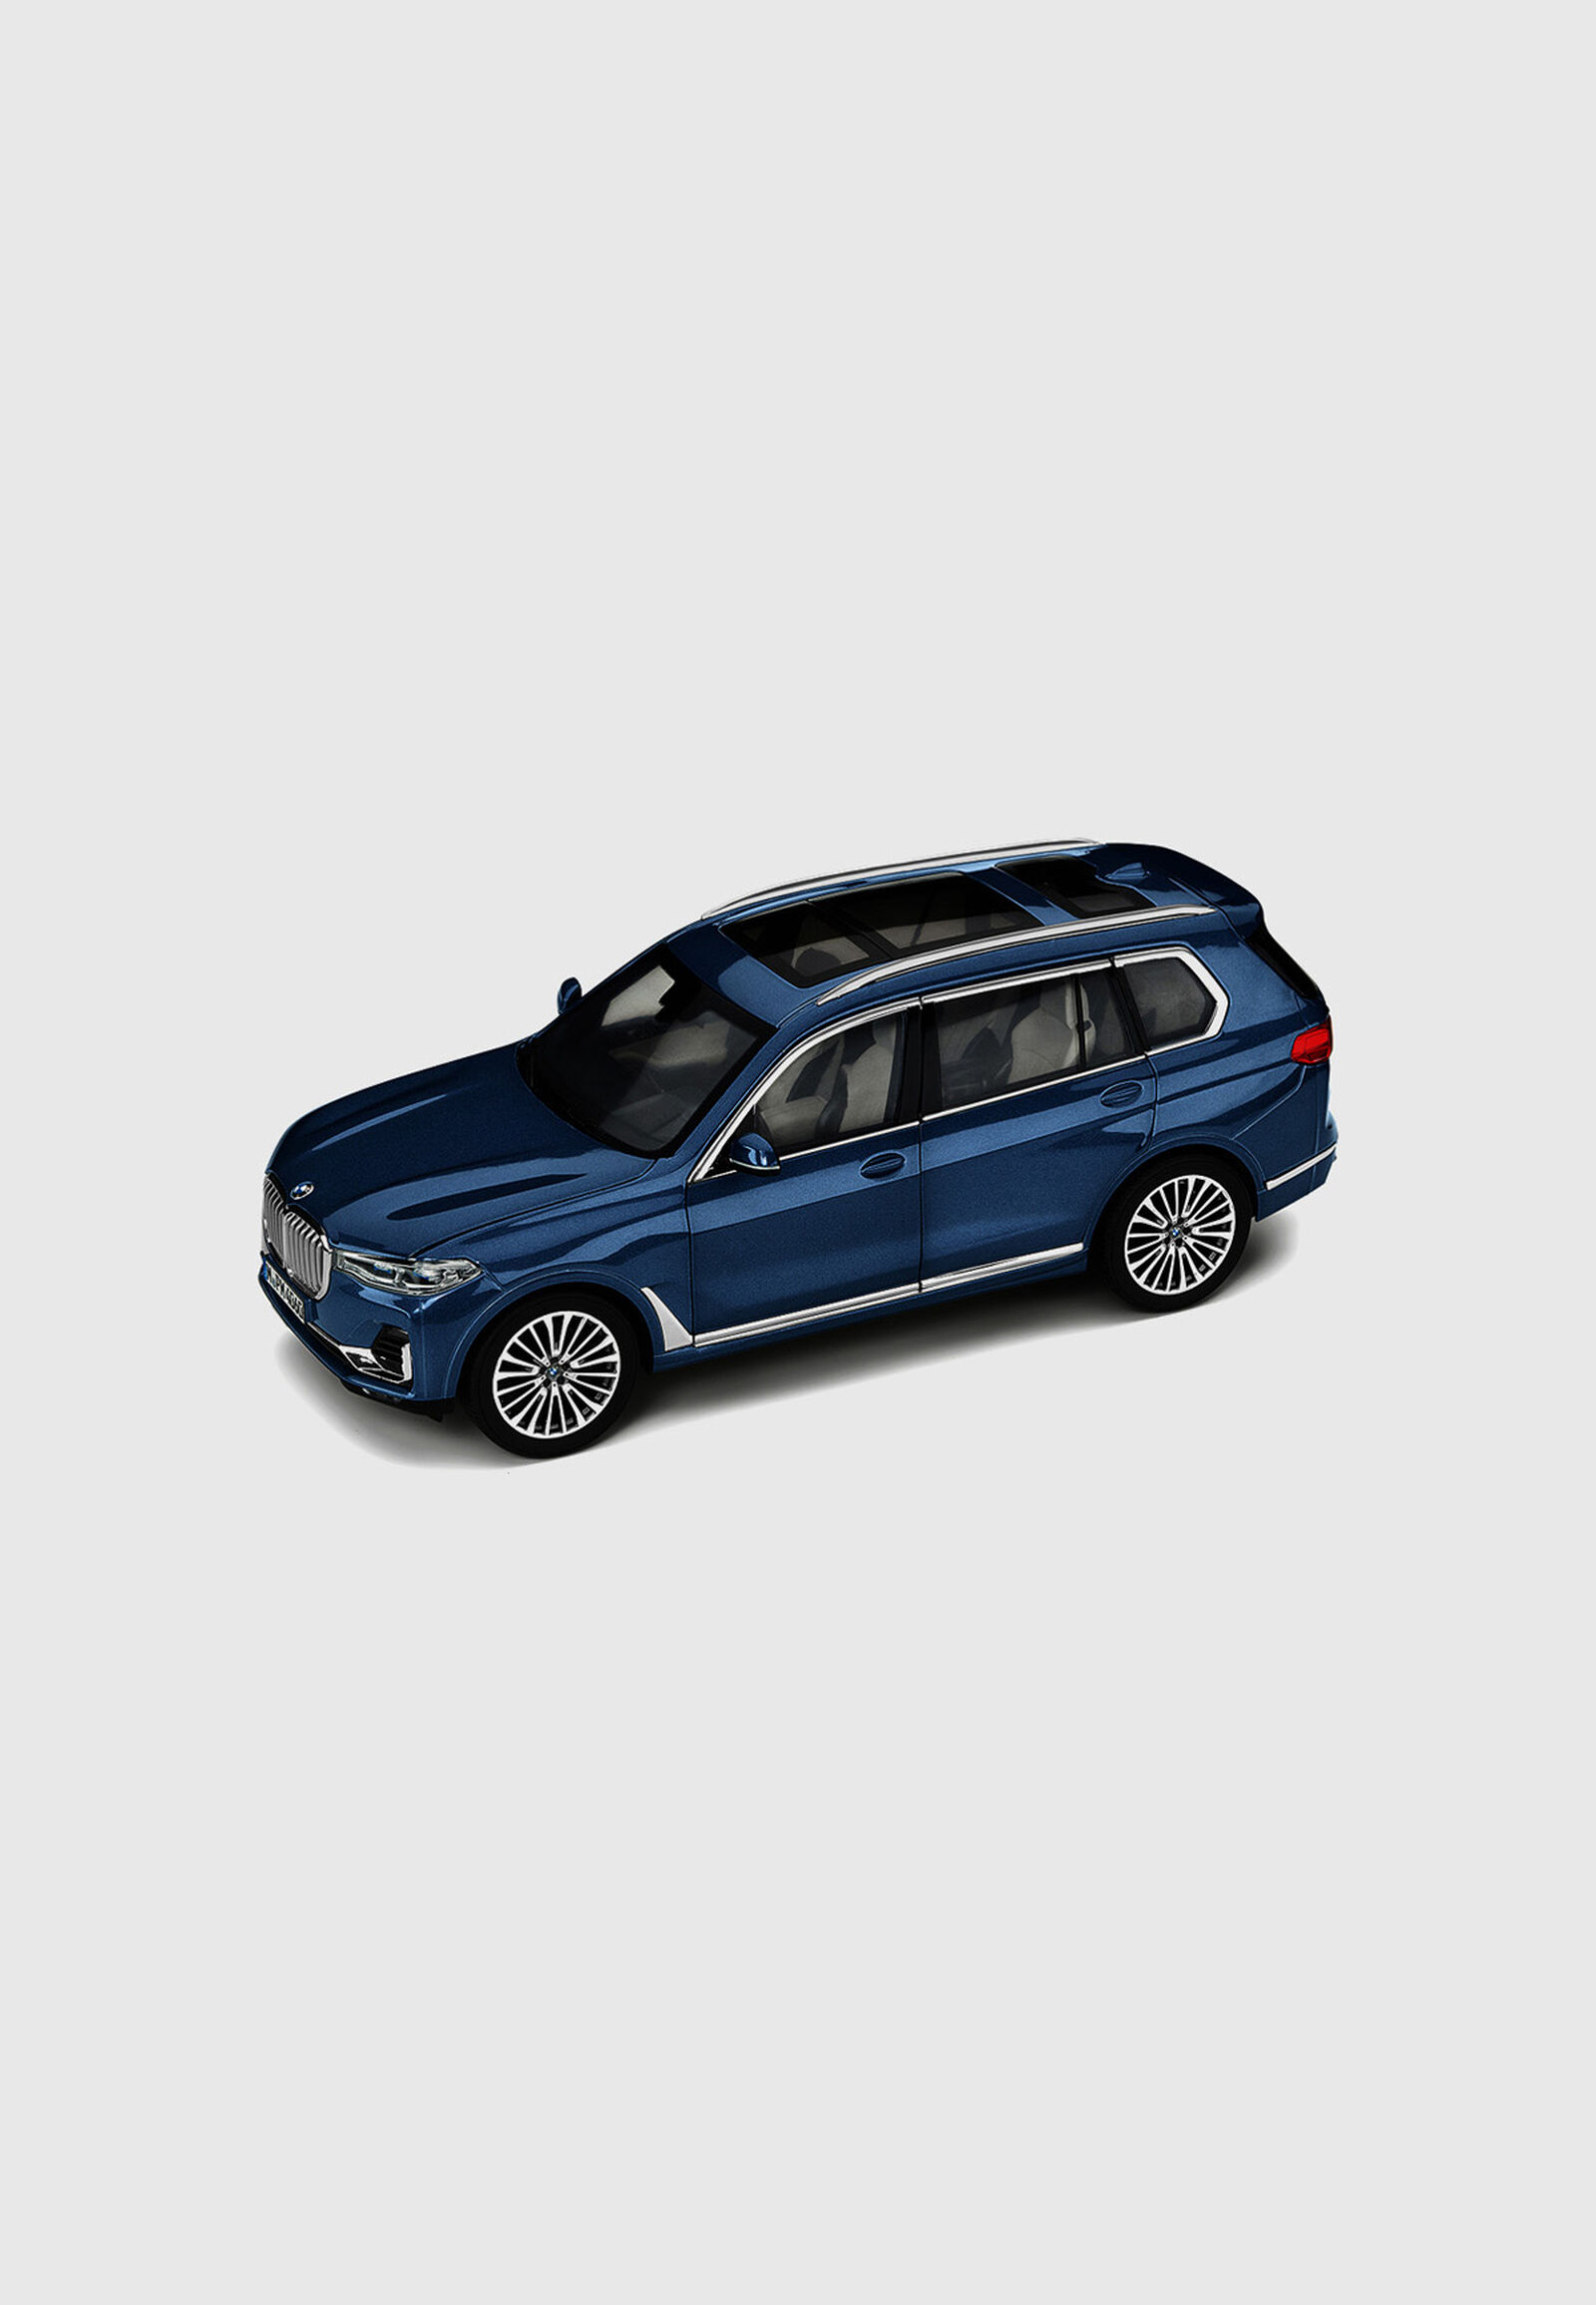 BMW MINIATURE X7 1:18 - hi-res